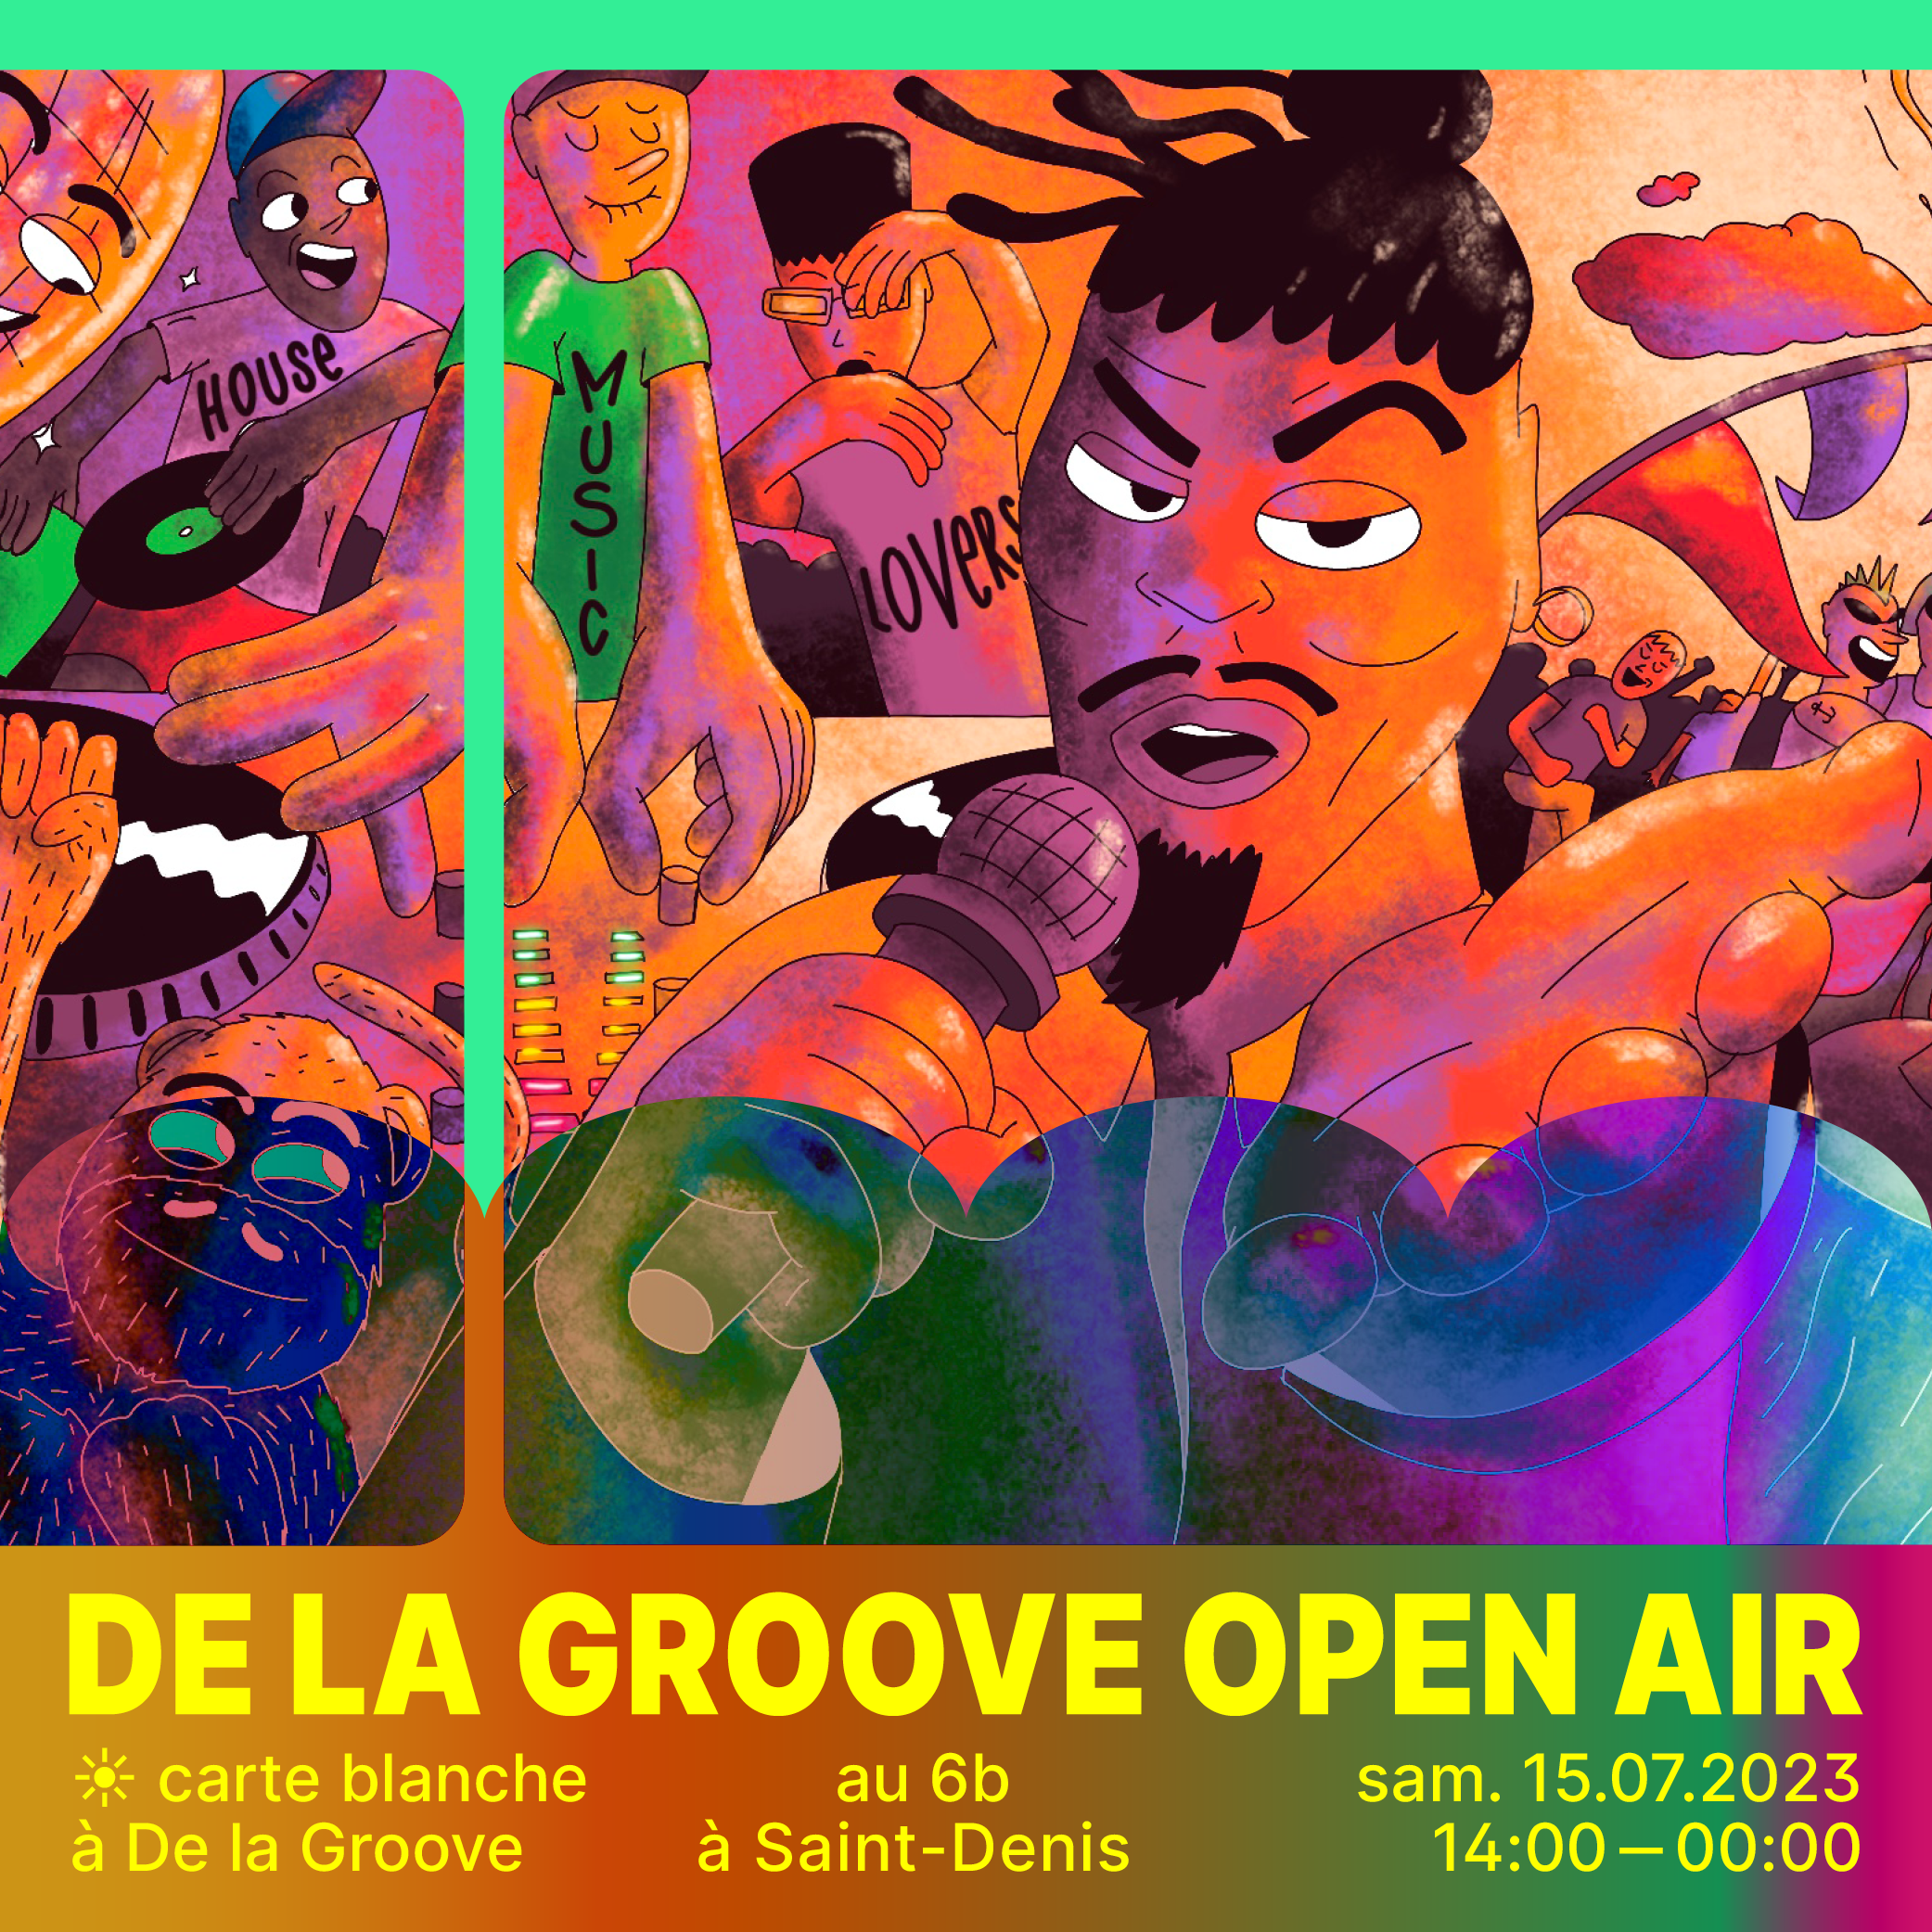 De La Groove Open Air - 6B - Página trasera